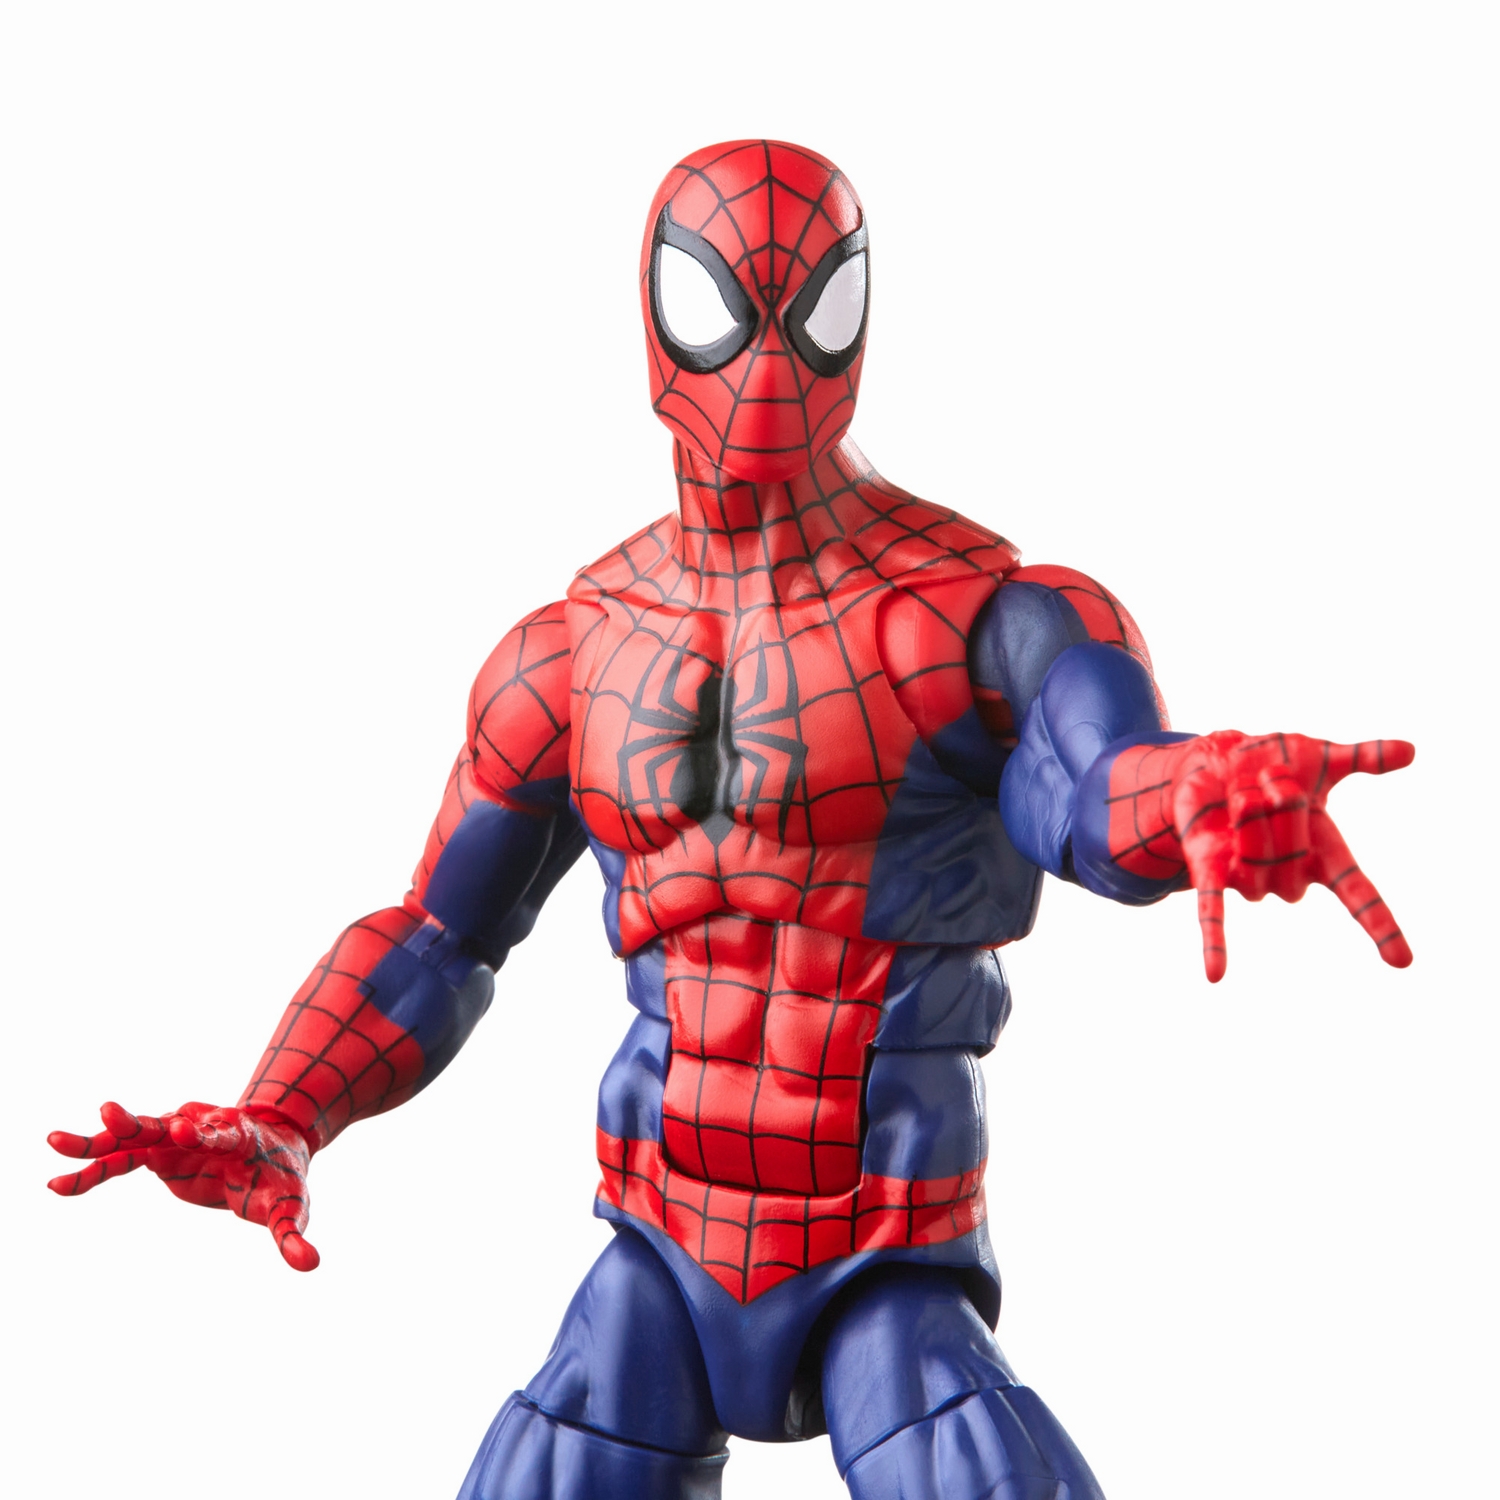 Marvel Legends Series Spider-Man and Marvel’s Spinneret - Image 17.jpg